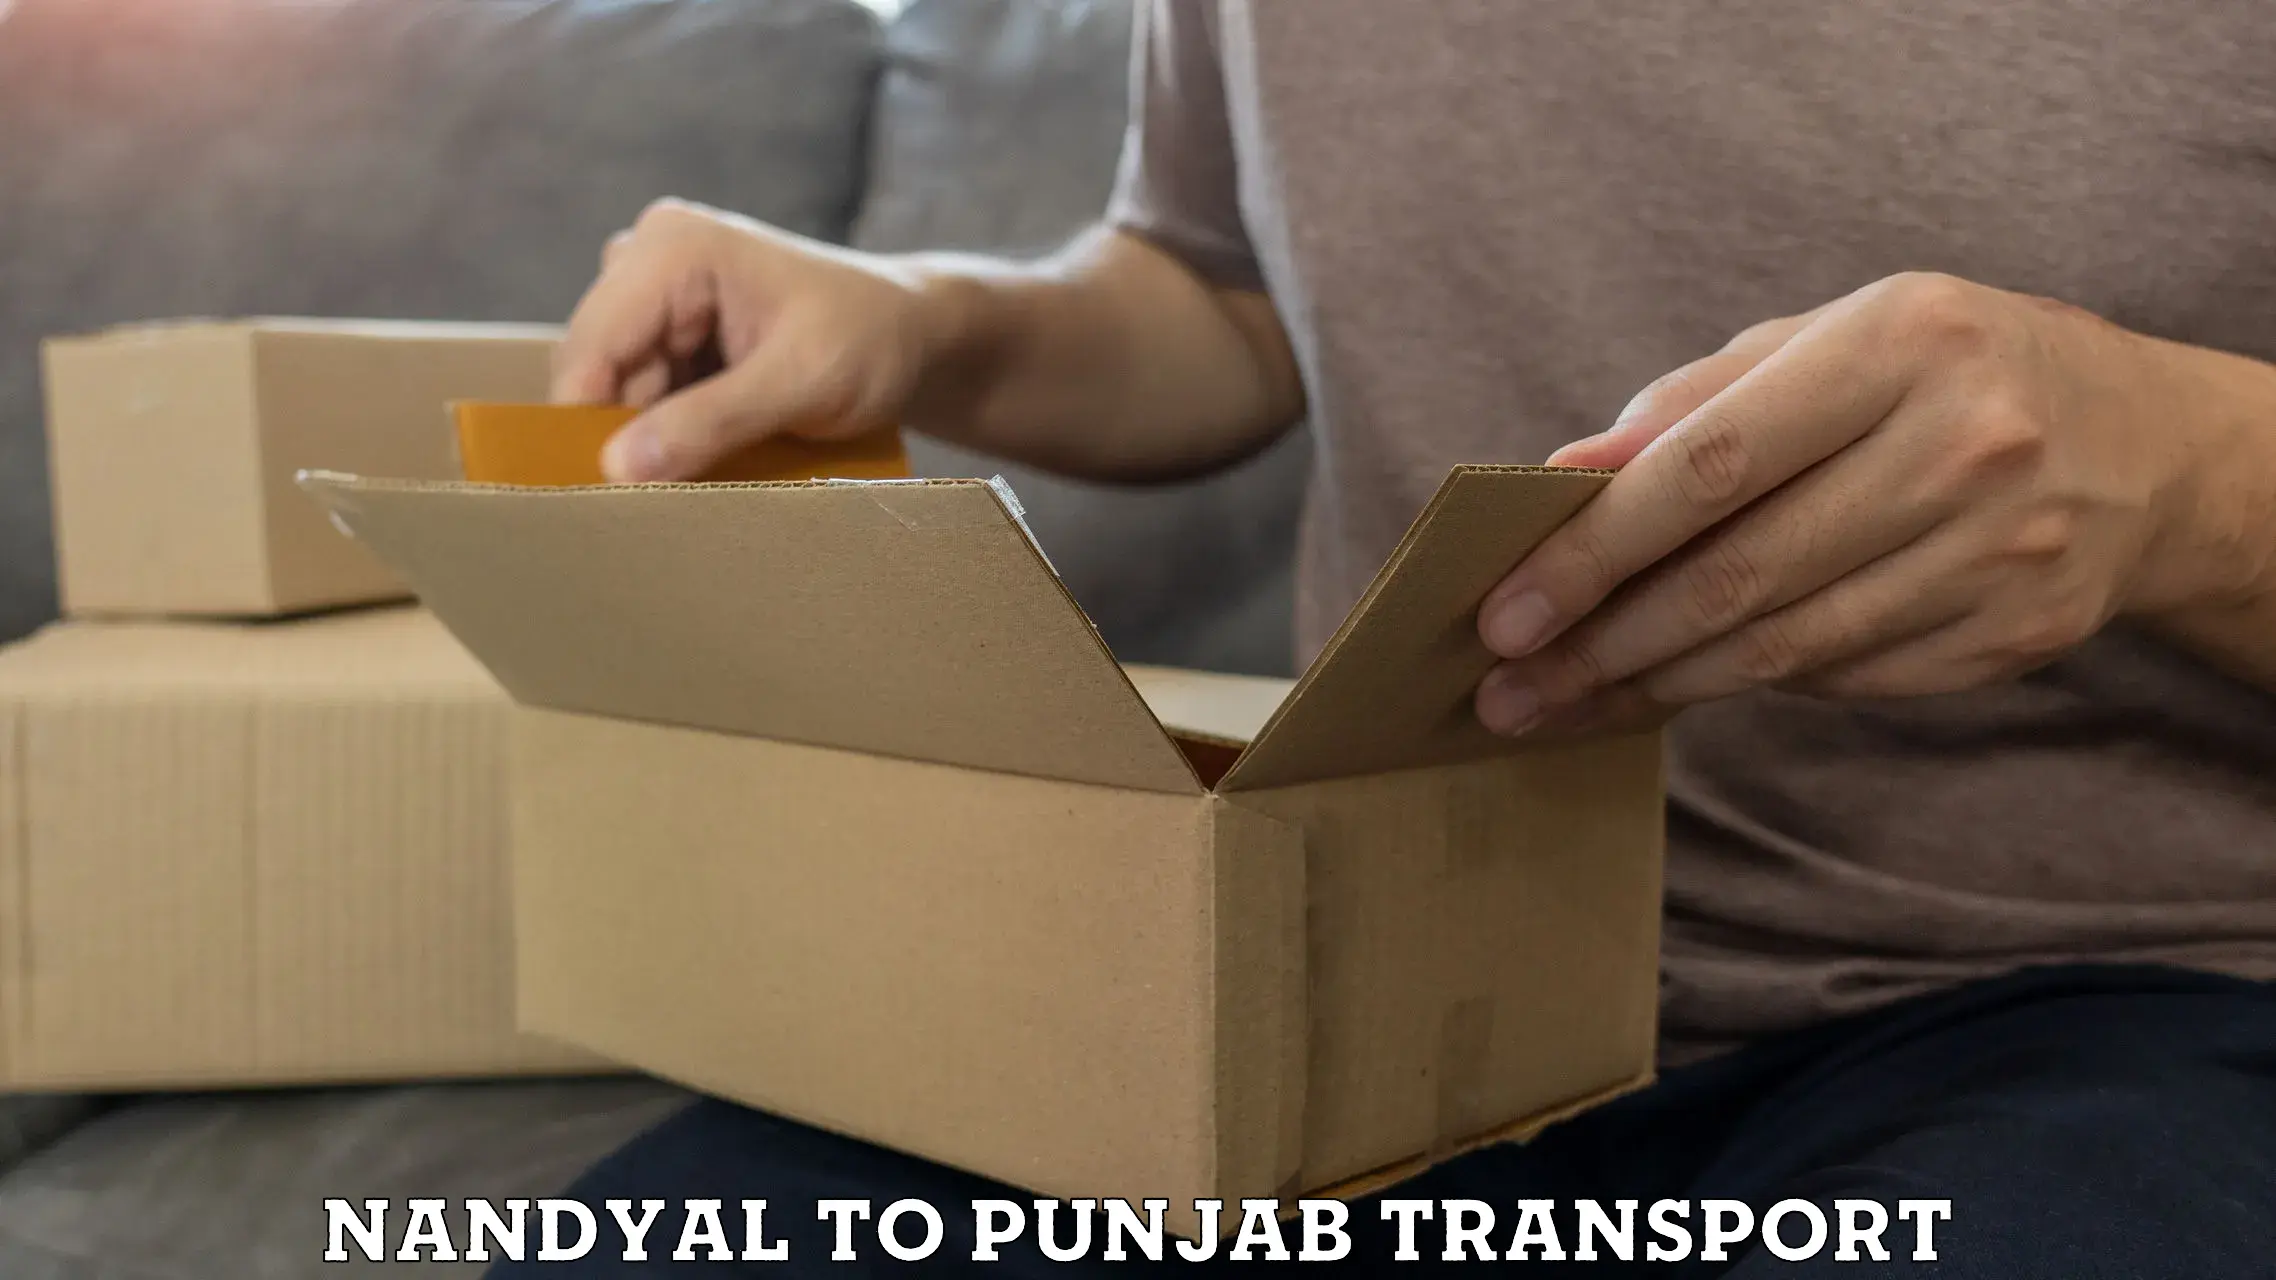 Daily transport service Nandyal to Barnala